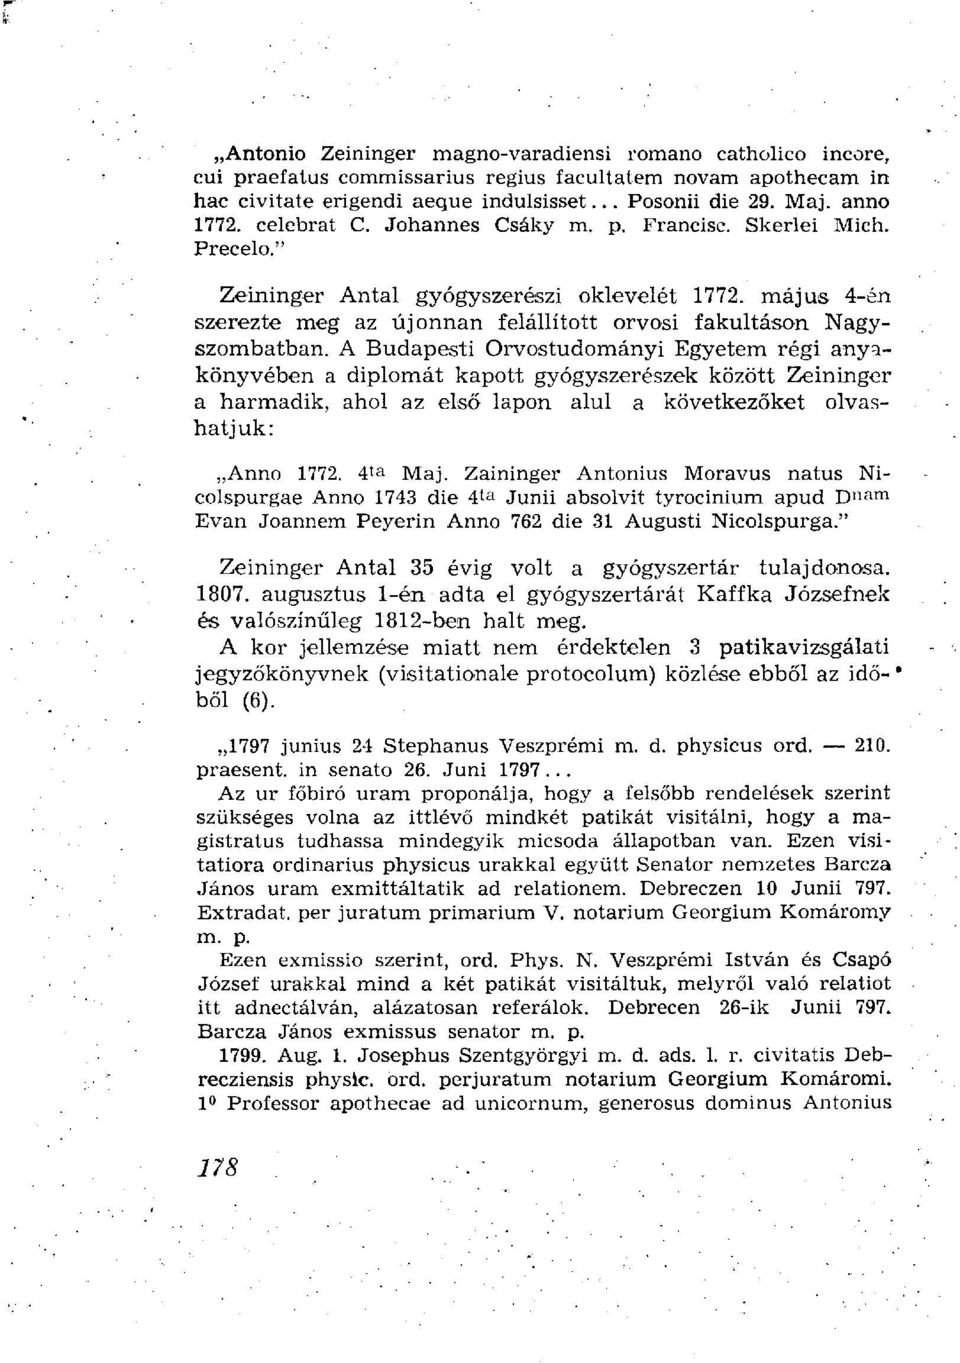 A Budapesti Orvostudományi Egyetem régi anyakönyvében a diplomát kapott gyógyszerészek között Zeininger a harmadik, ahol az első lapon alul a következőket olvashatjuk: Anno 1772. 4 t a Maj.